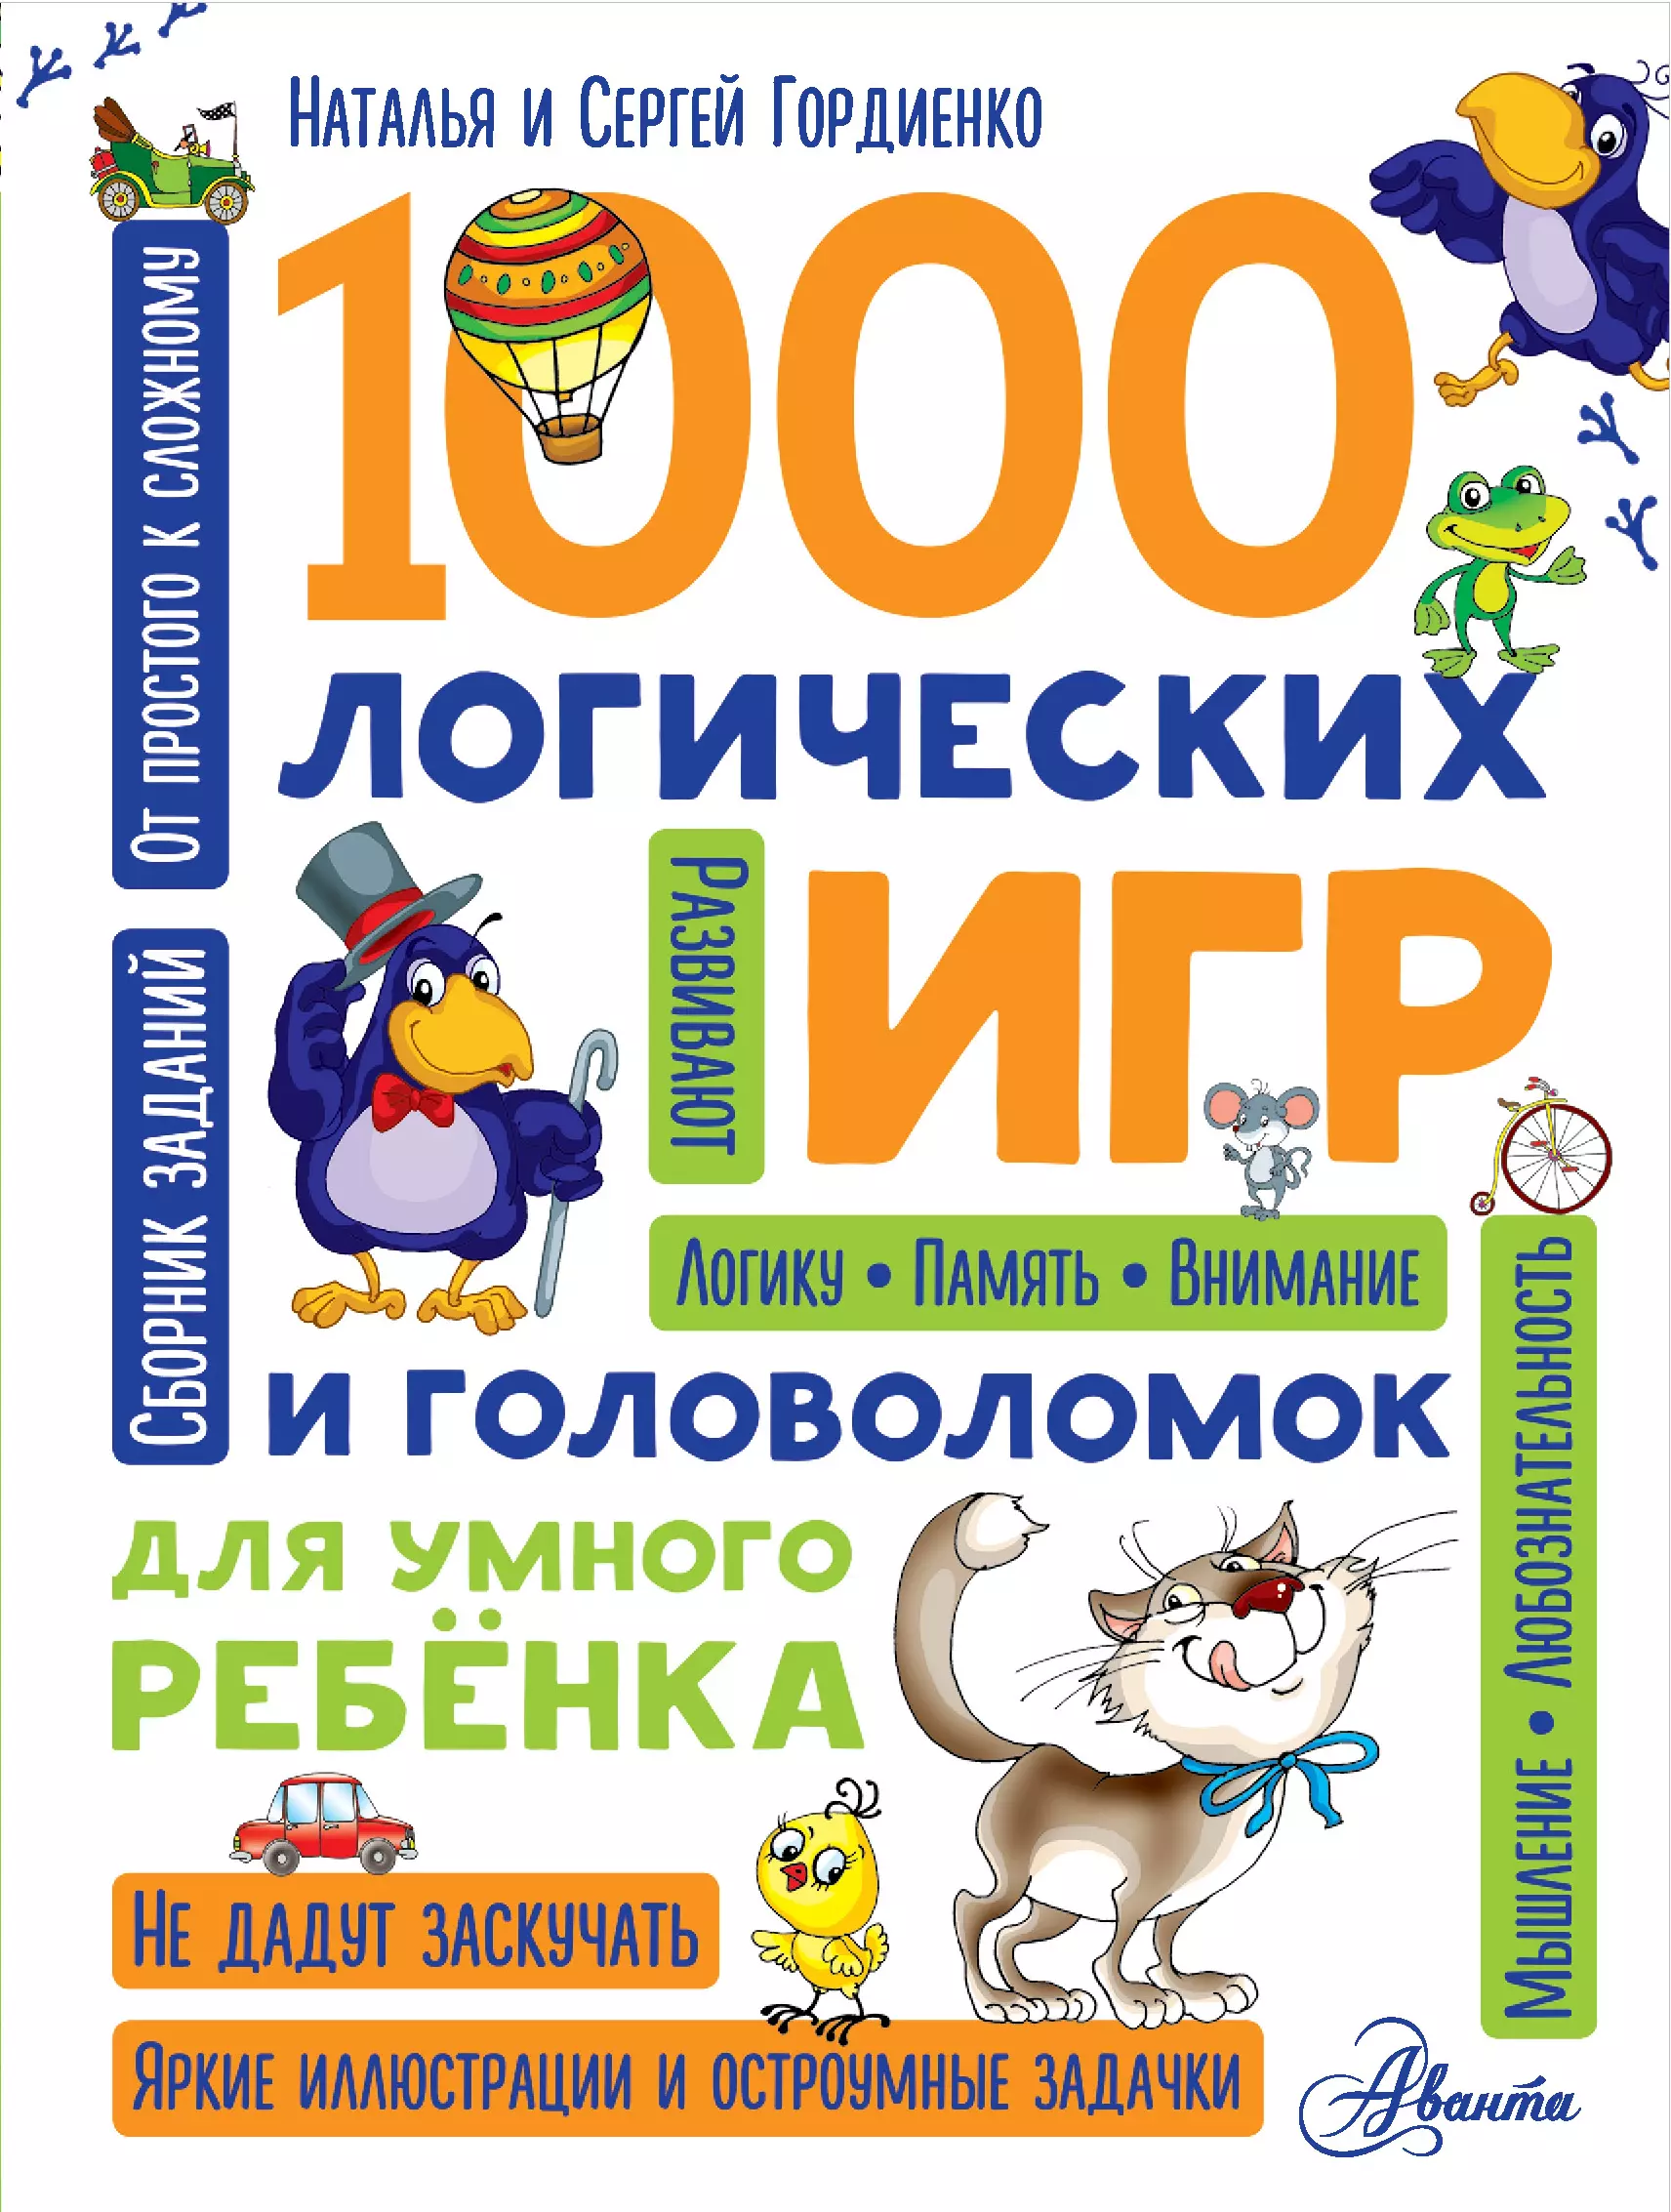 1000 логических игр и головоломок для умного ребенка гордиенко николай ильич большая книга логических игр и головоломок